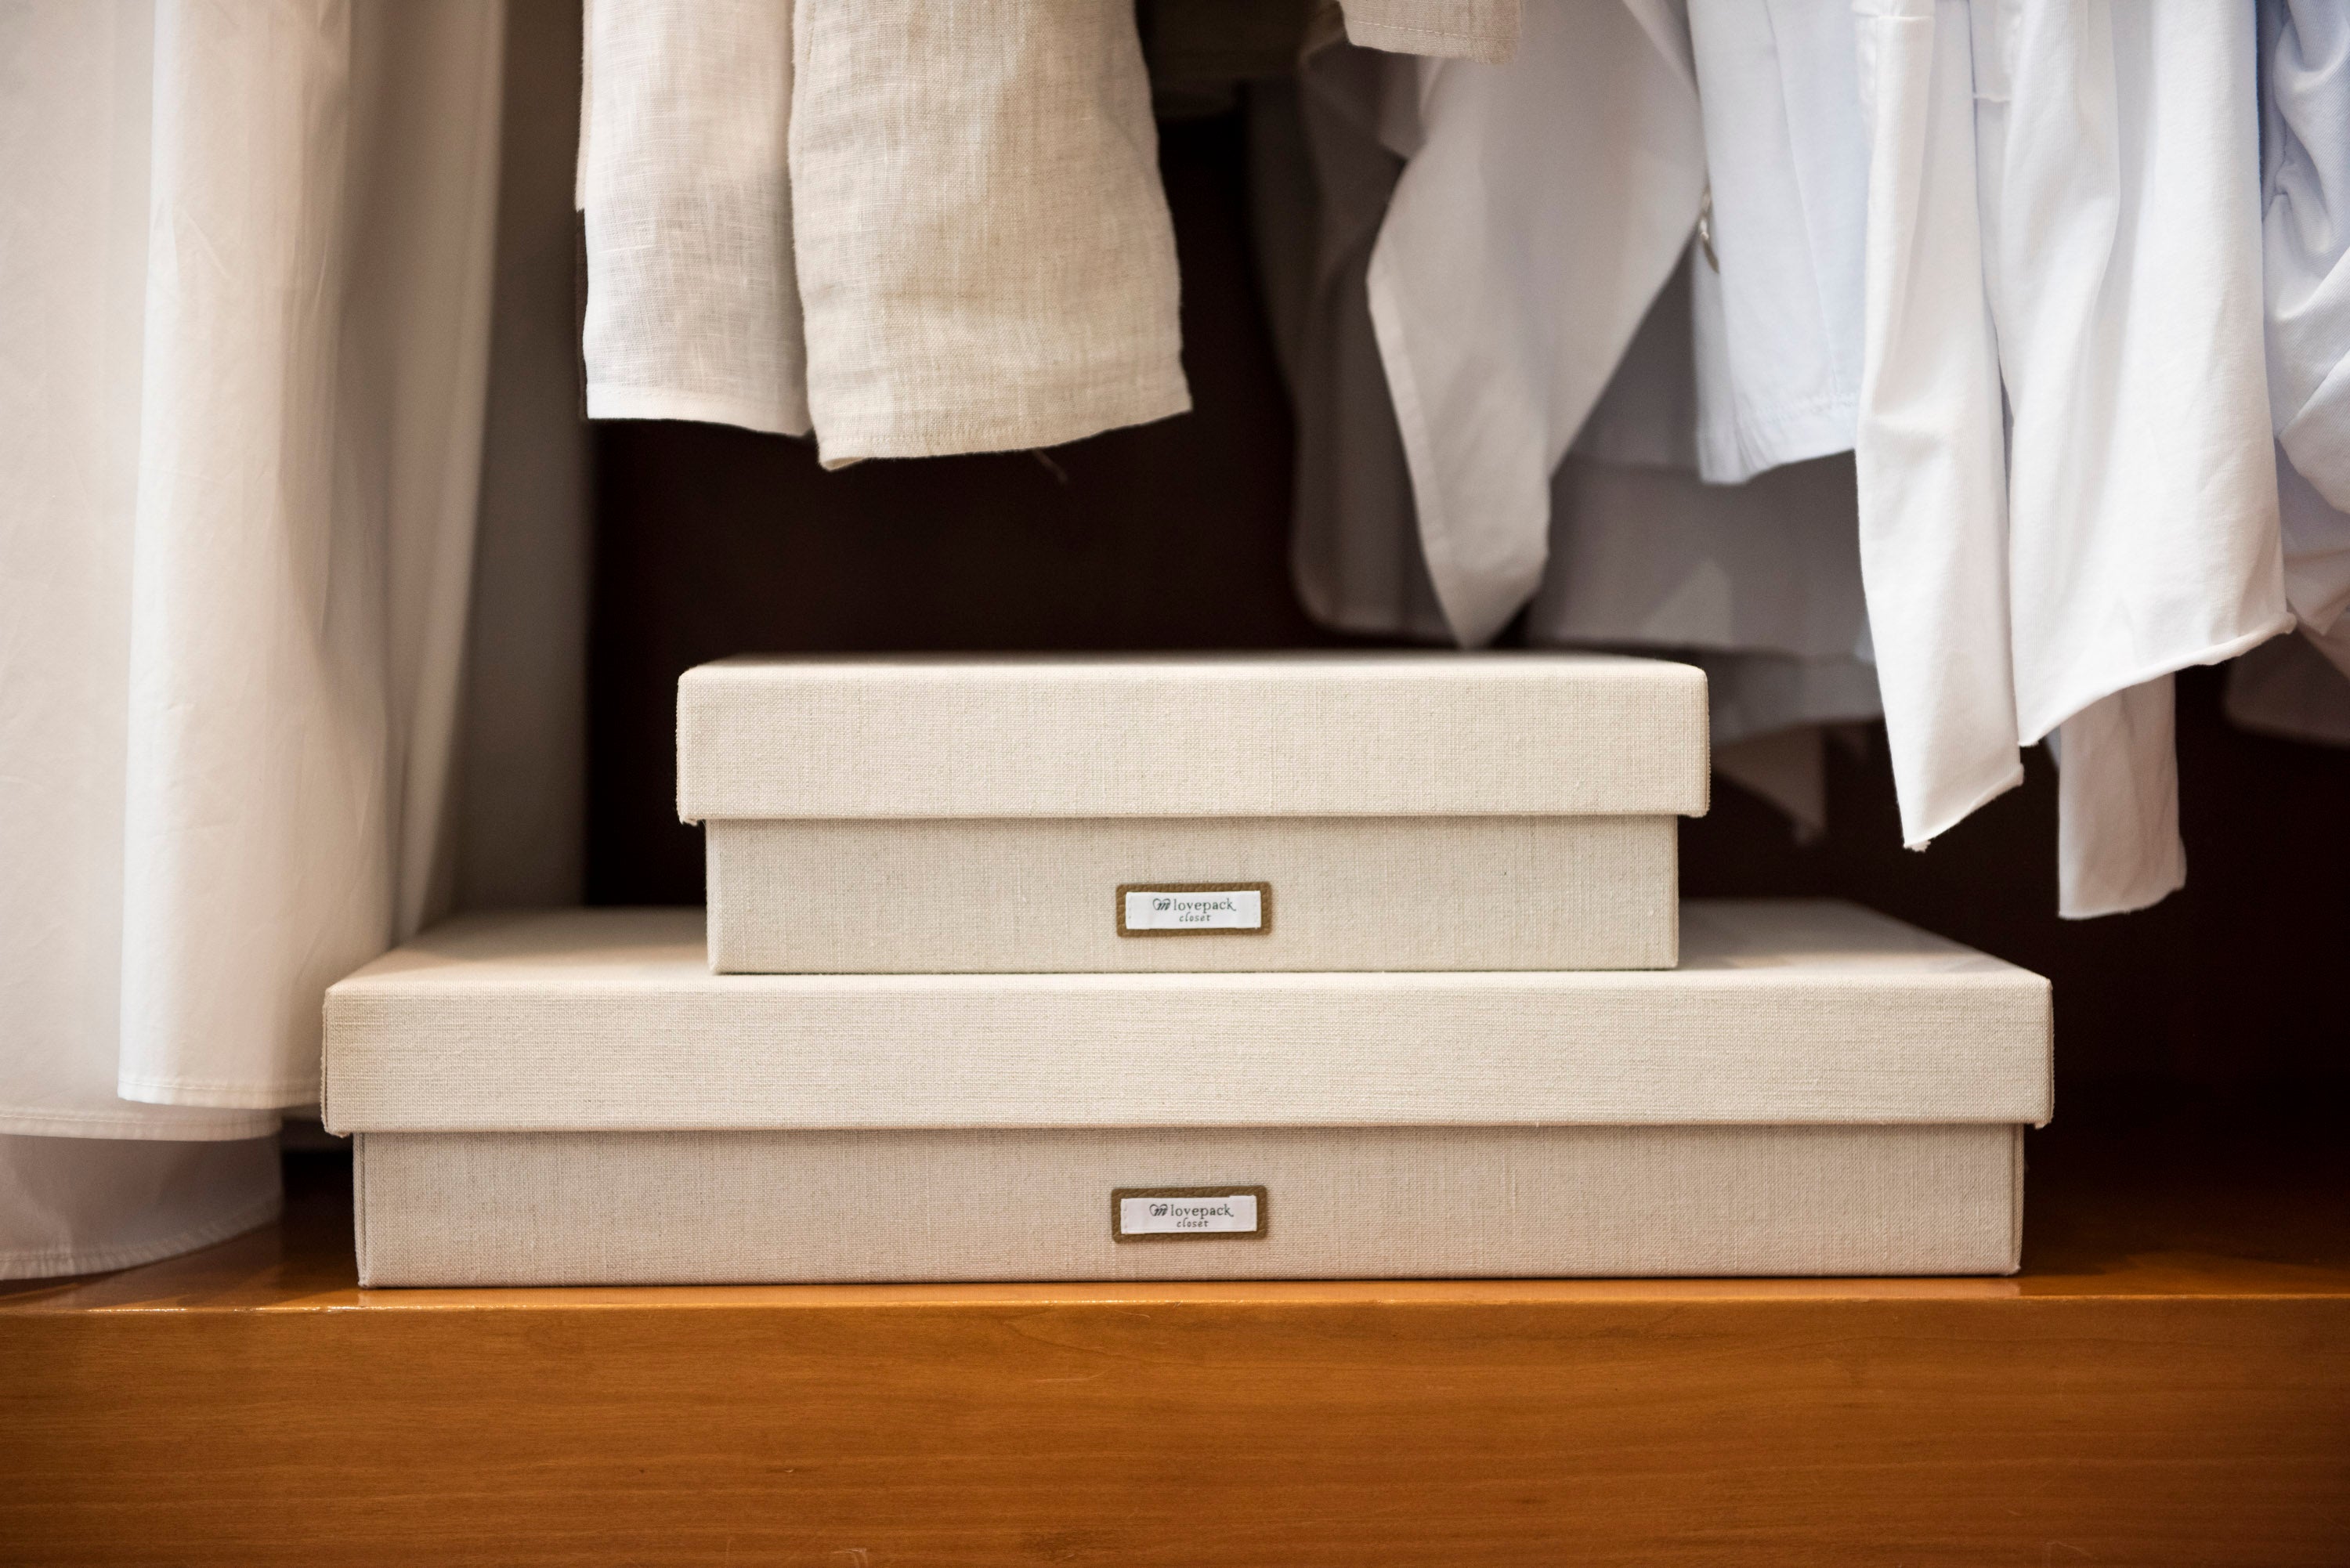 CLOSET - Linen wardrobe box - 4 compartments